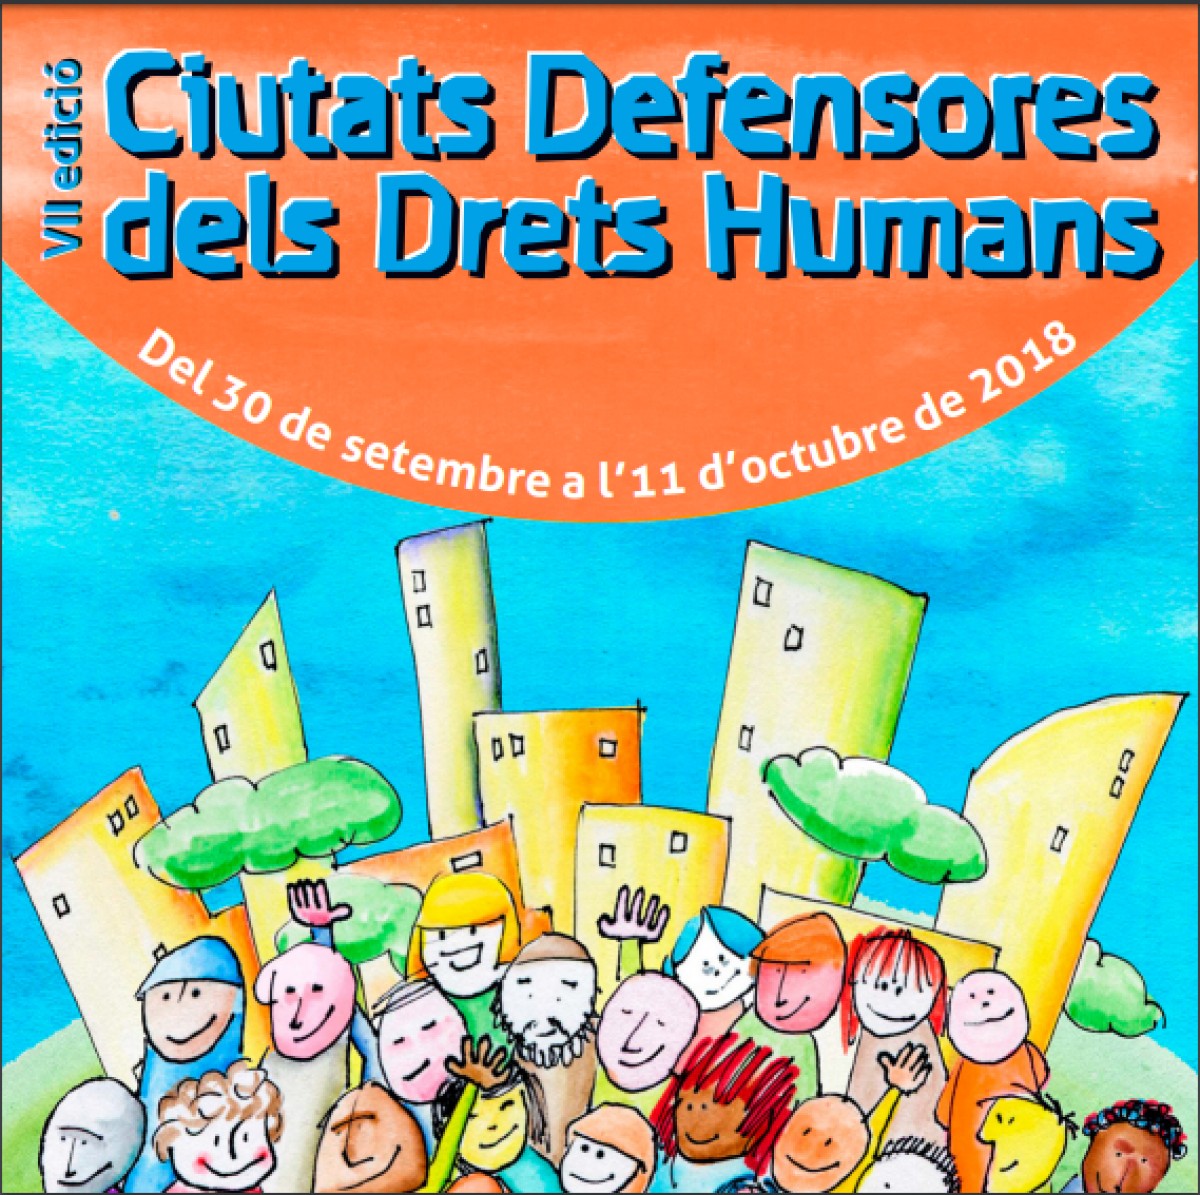 El cartell del projecte Ciutats Defensores dels Drets Humans.